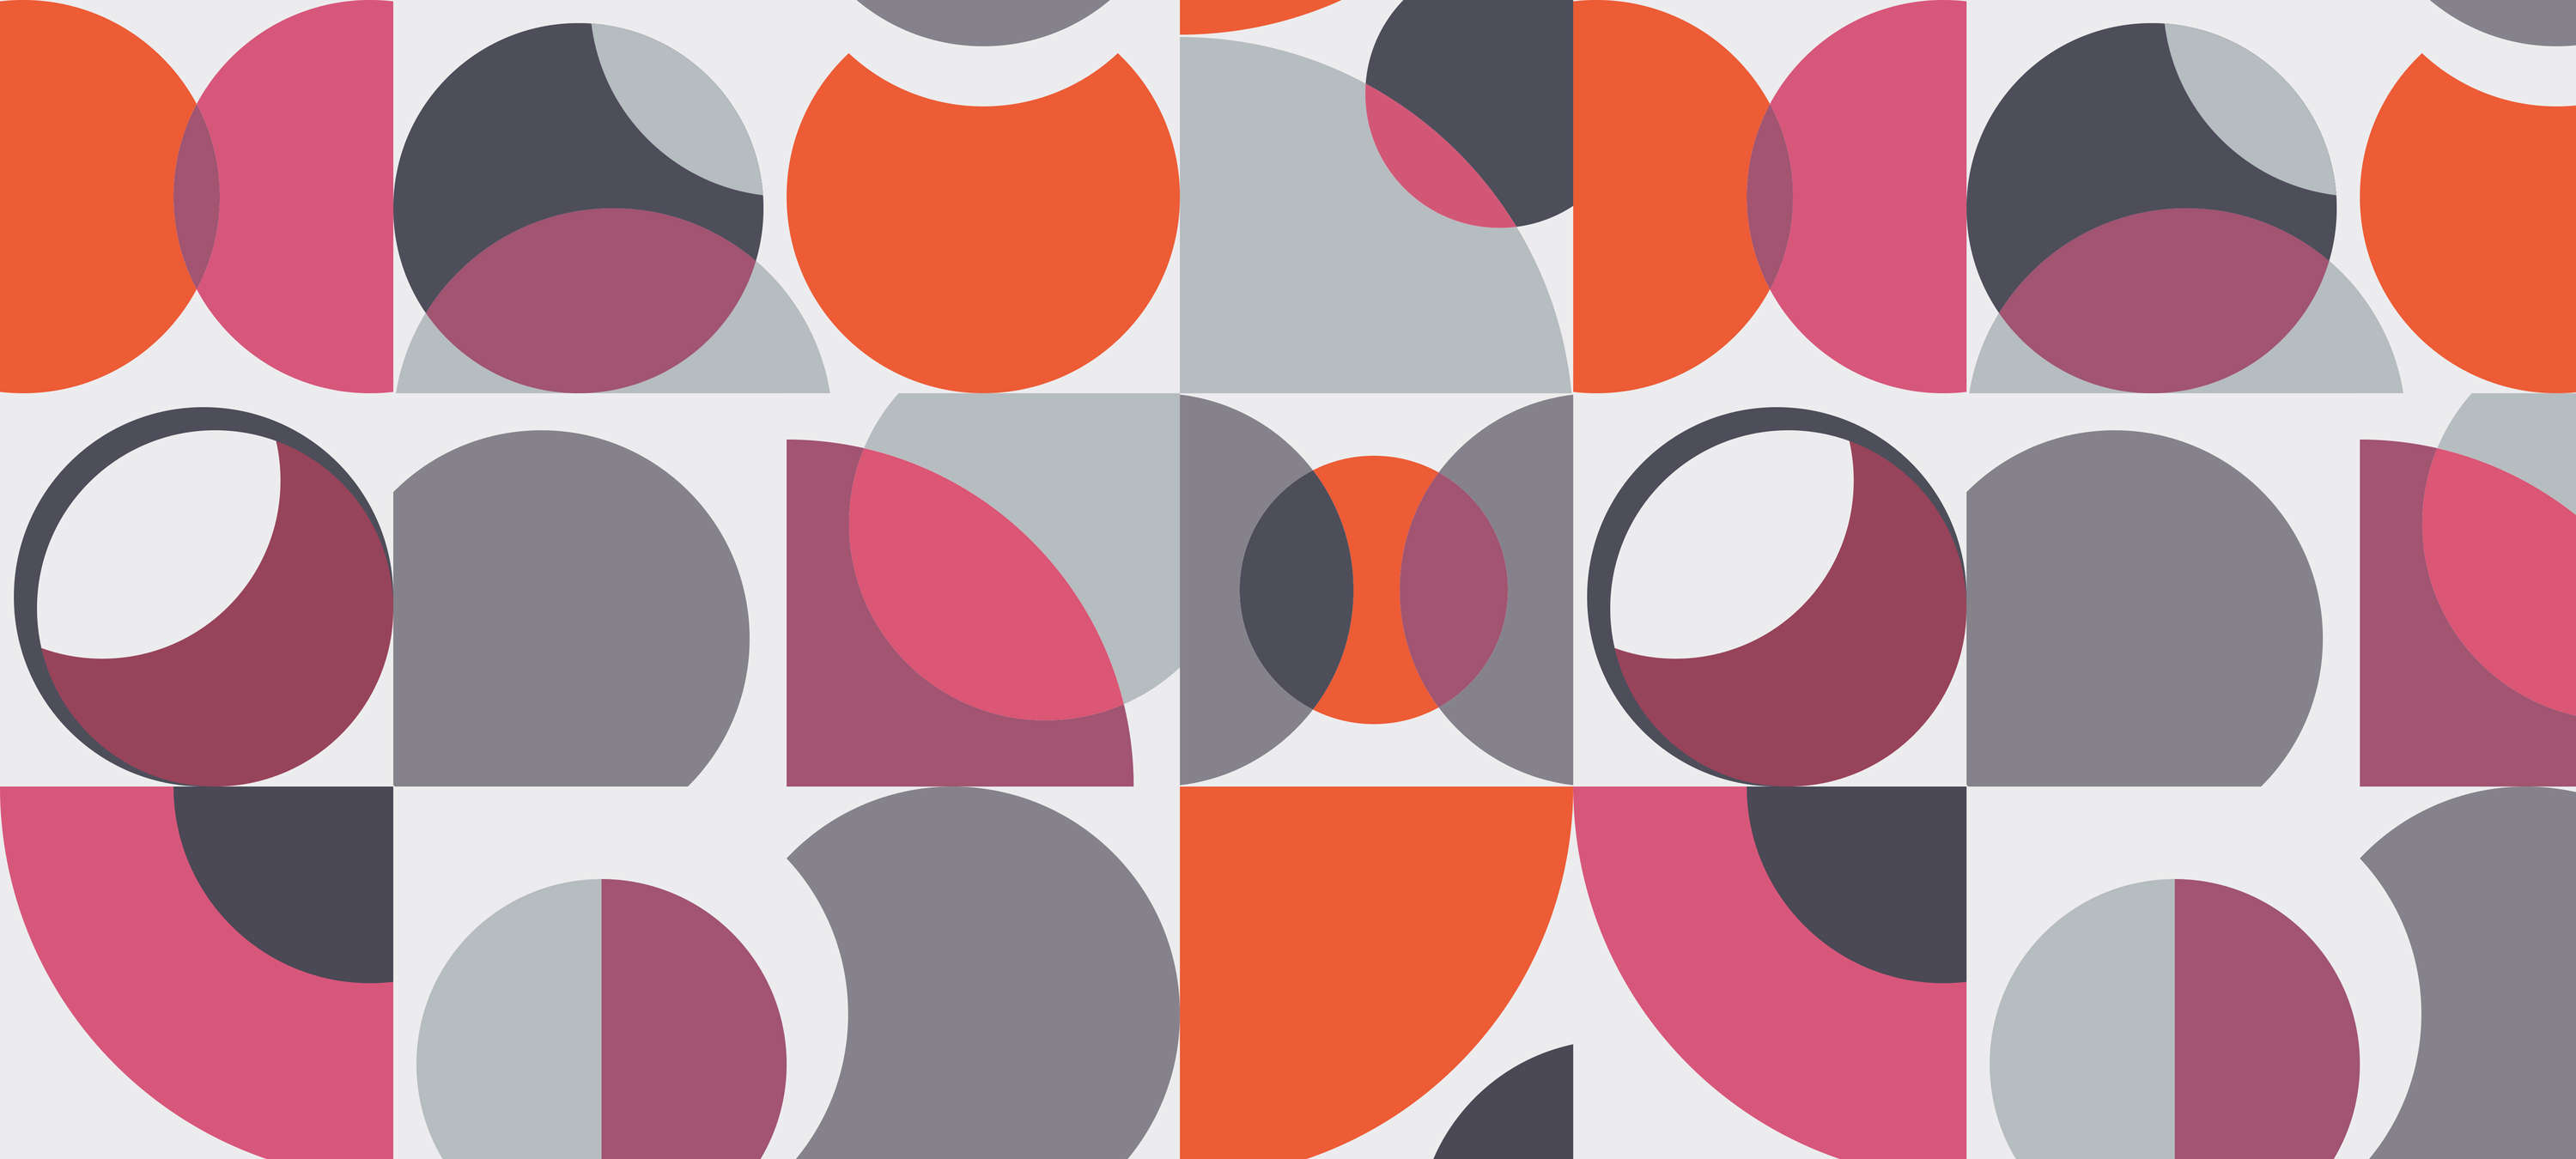             Muurschildering retro design geometrisch & abstract - oranje, paars, grijs
        